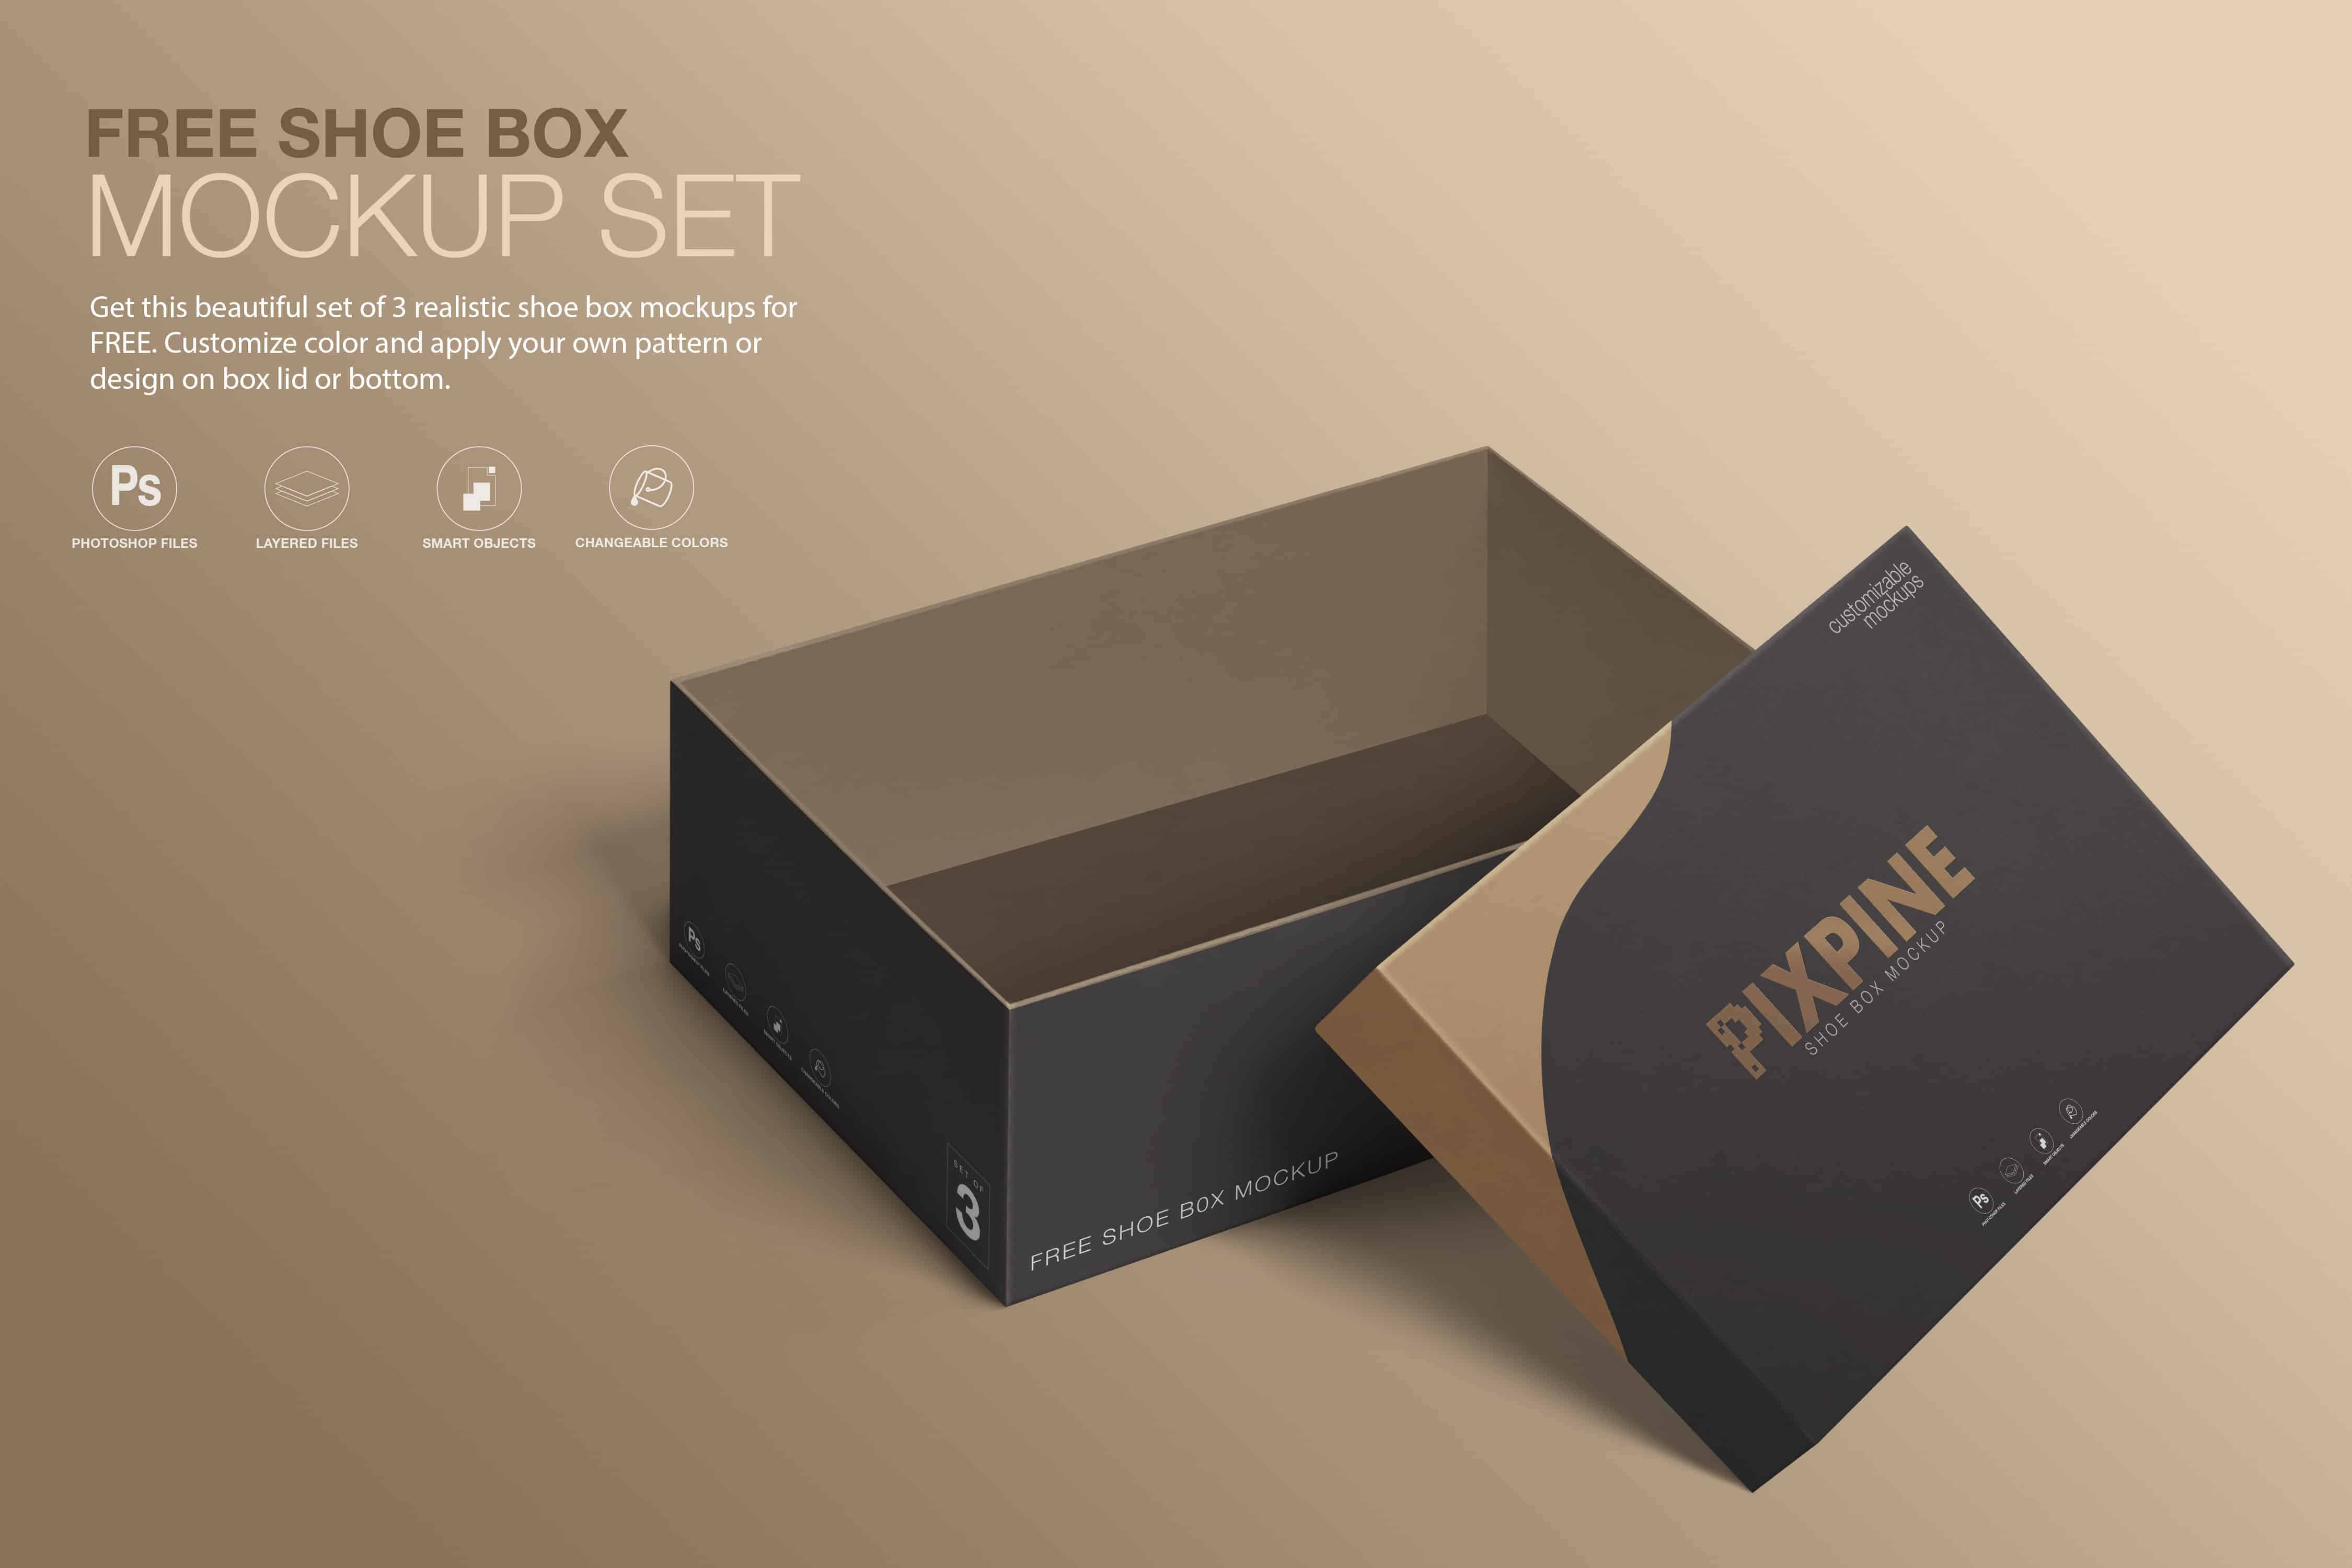 Free Shoebox Mockup – Set of 3